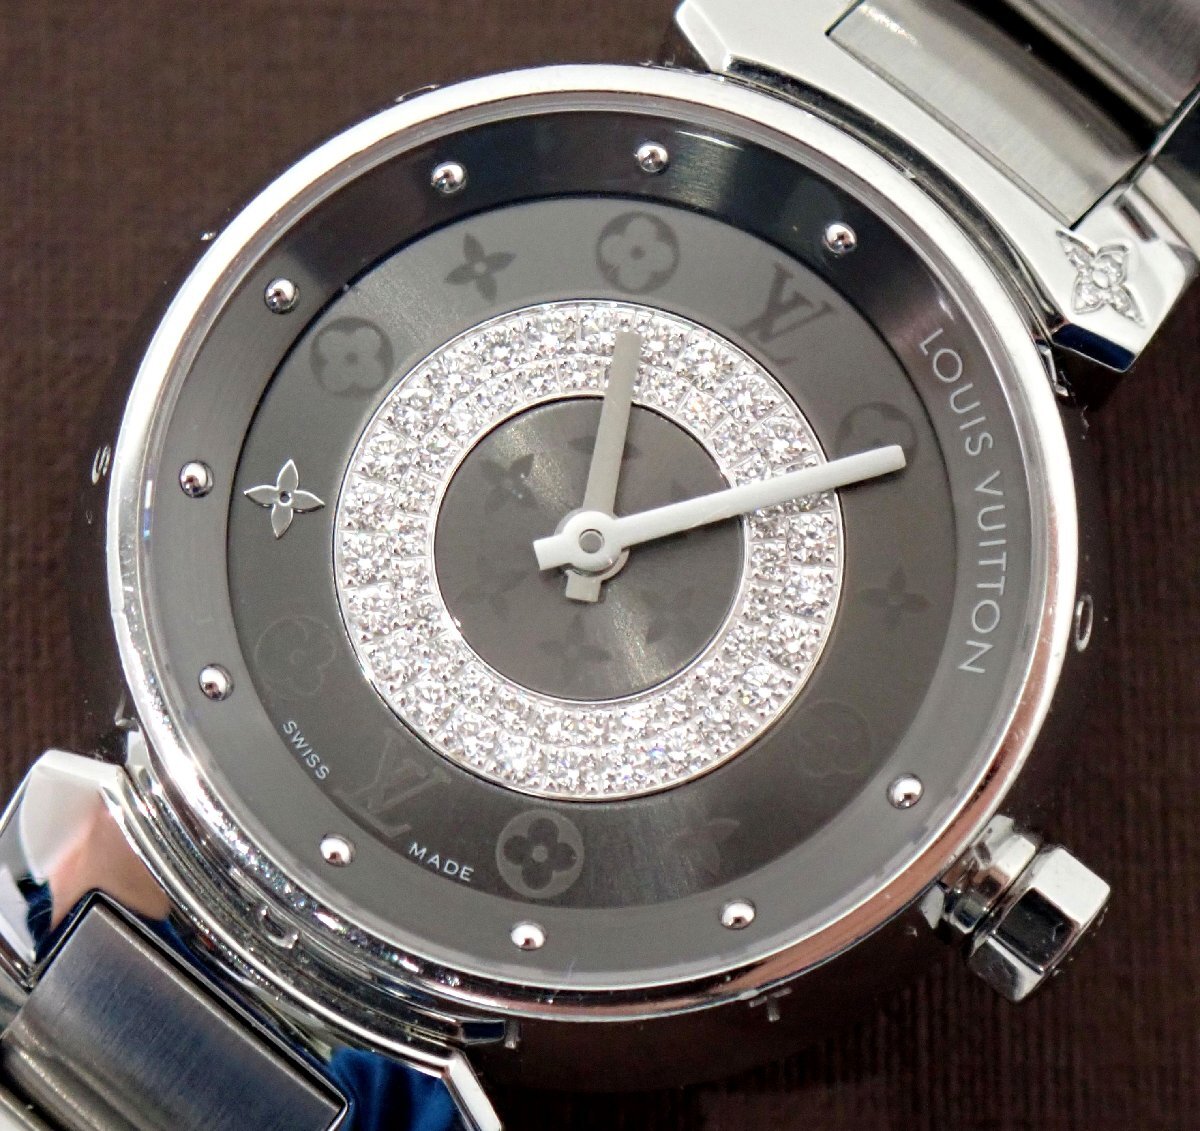  нержавеющая сталь ремень! Vuitton язык b-ru диск PM Q12MU монограмма Circle diamond бриллиант кварц женский часы 